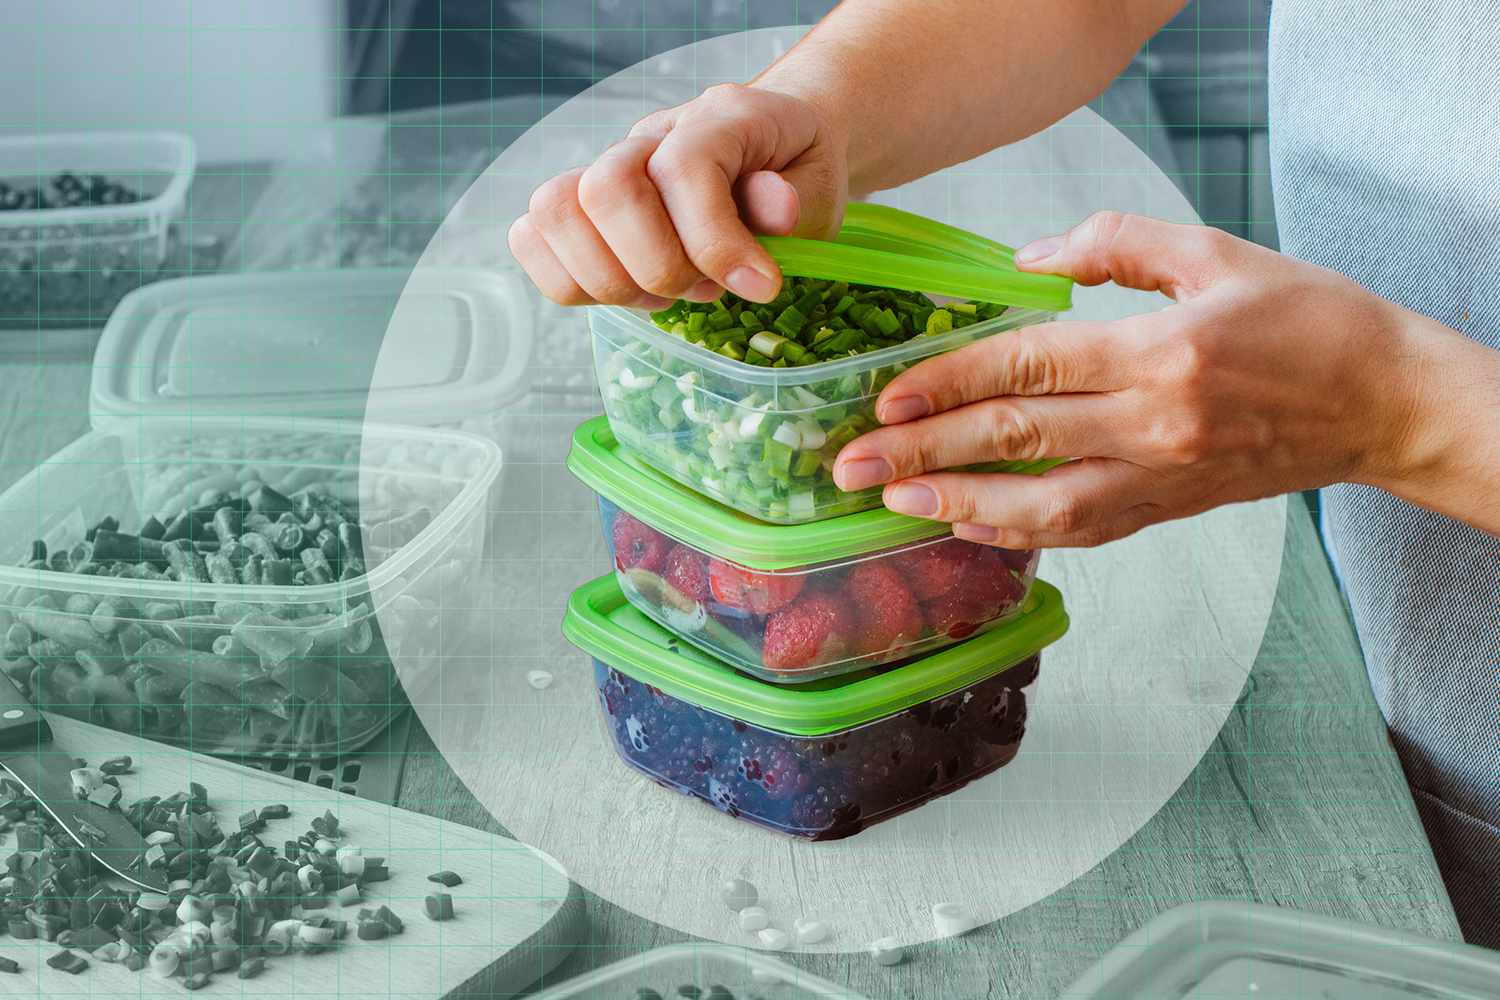 Bảo quản đồ ăn ngày Tết trong hộp nhựa nên lưu ý 7 điều này để an toàn cho sức khoẻ- Ảnh 1.